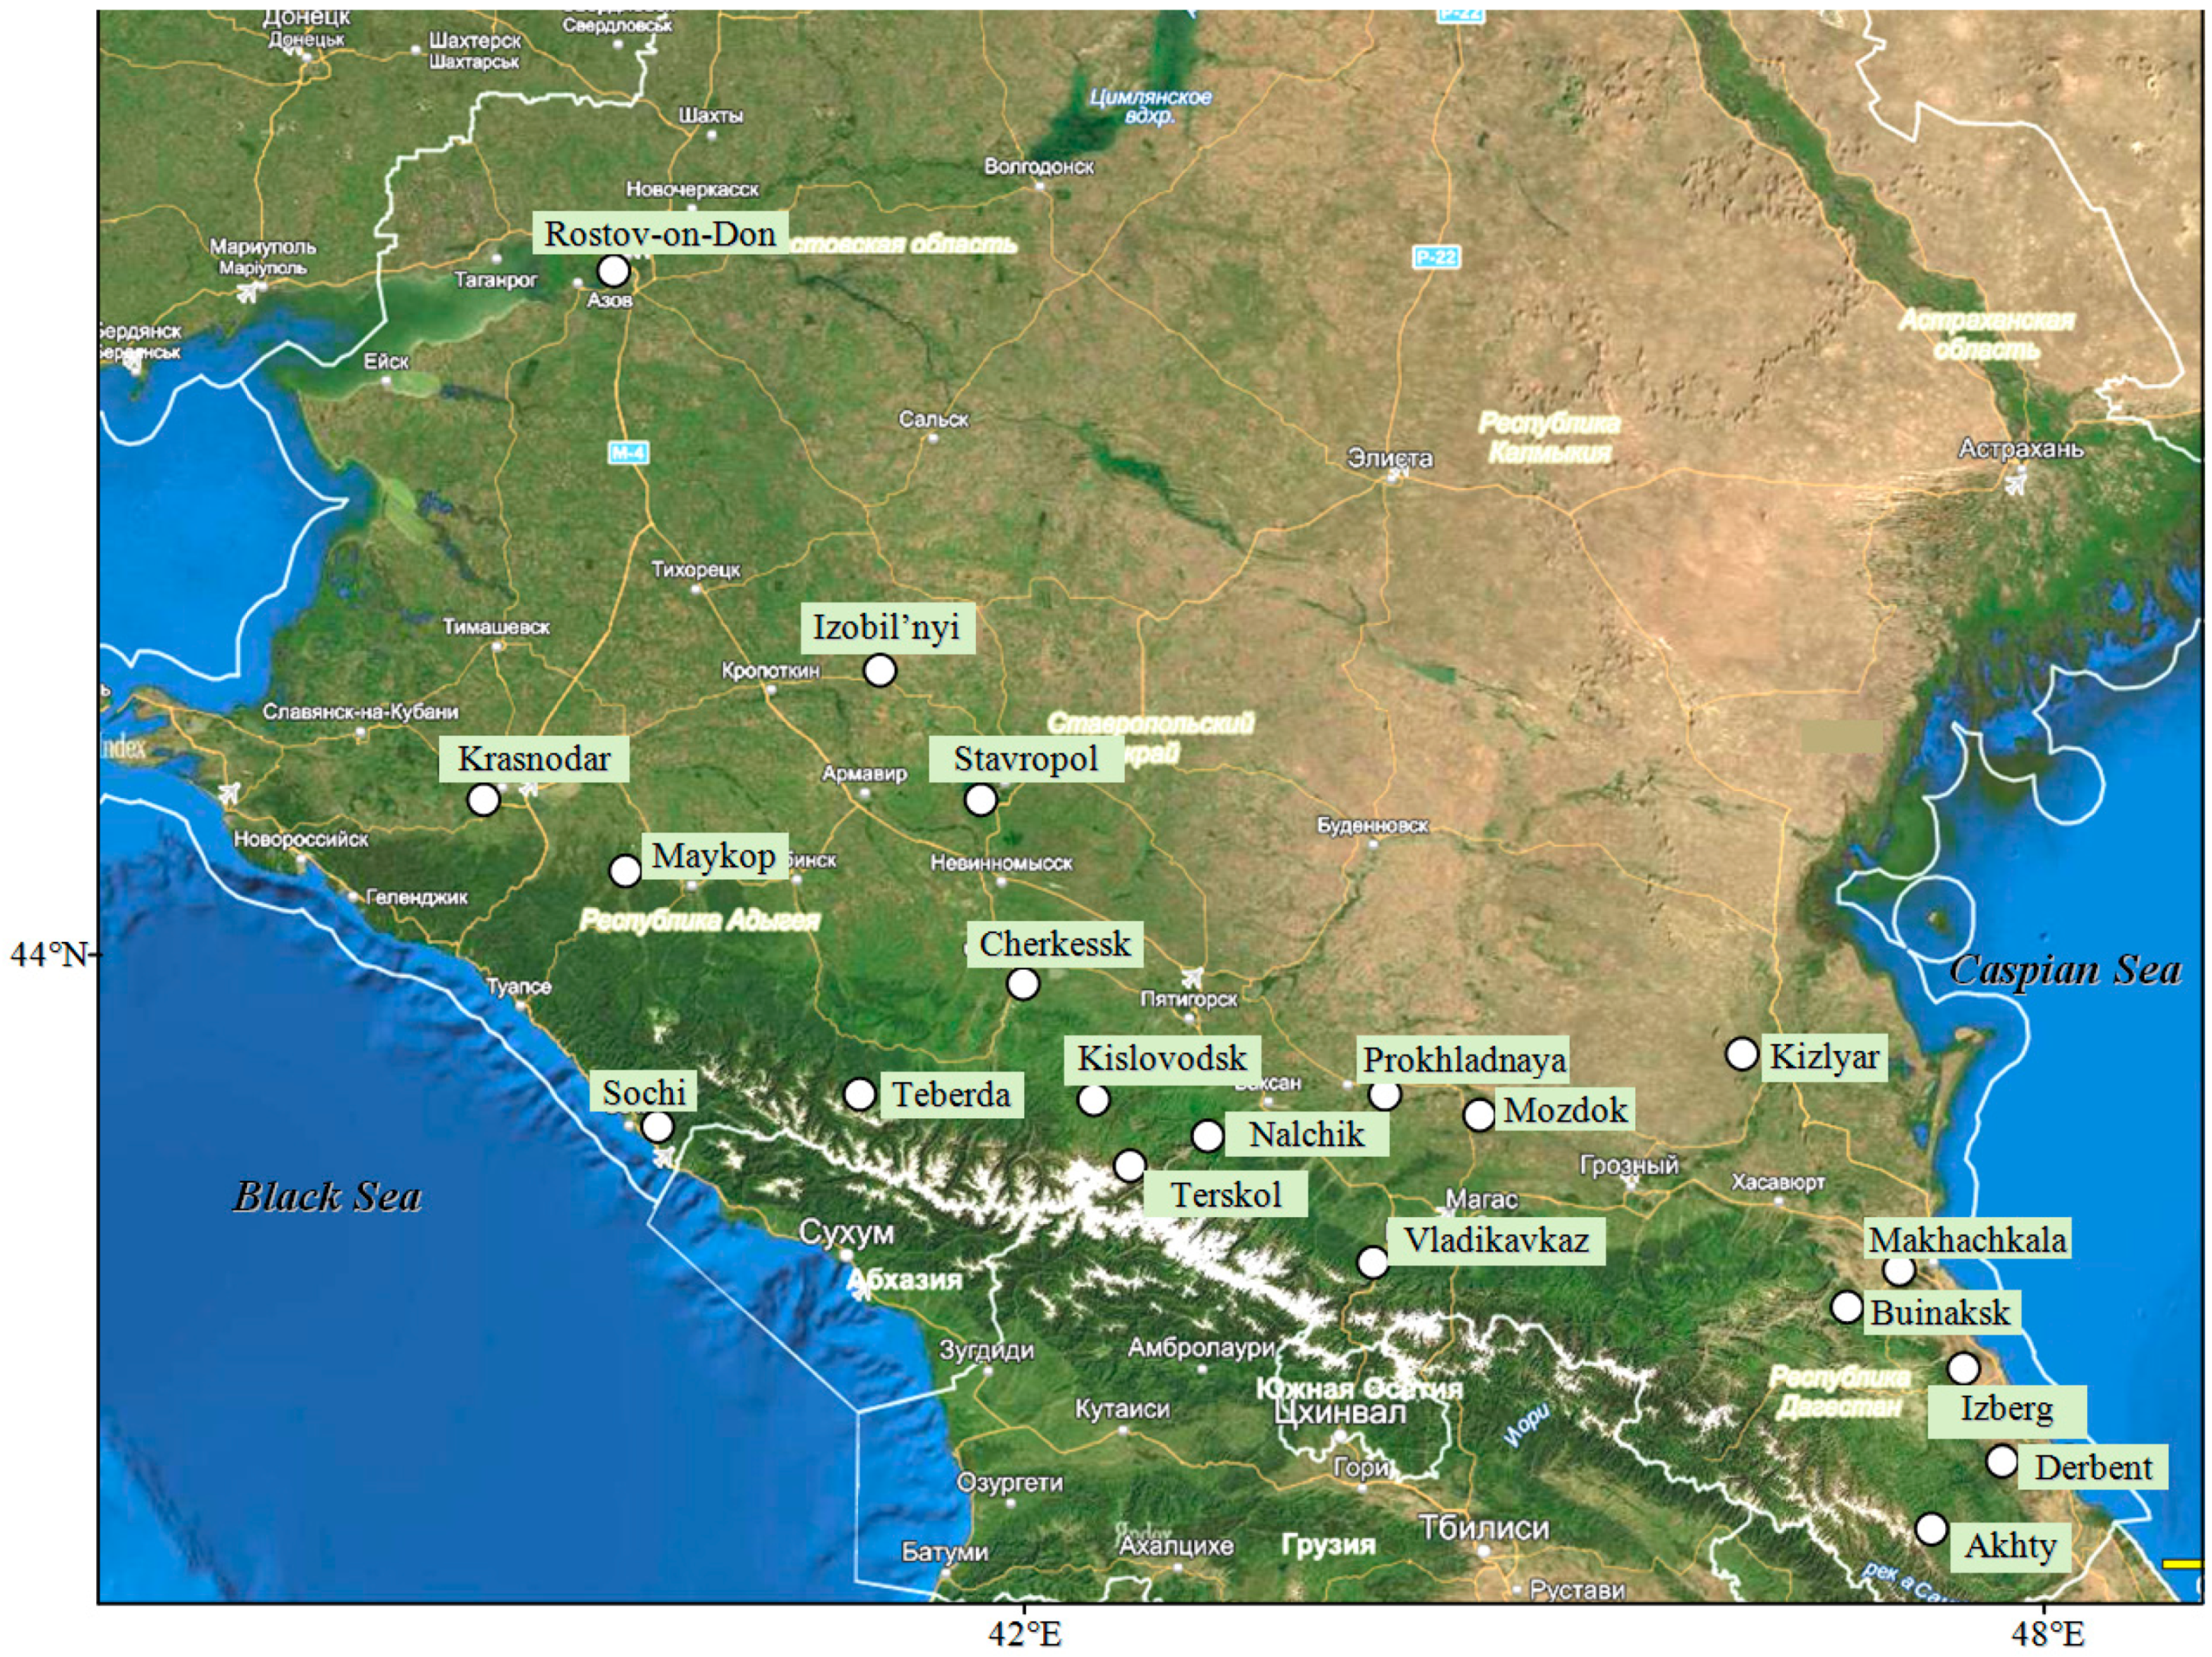 Caucasus Region Climate